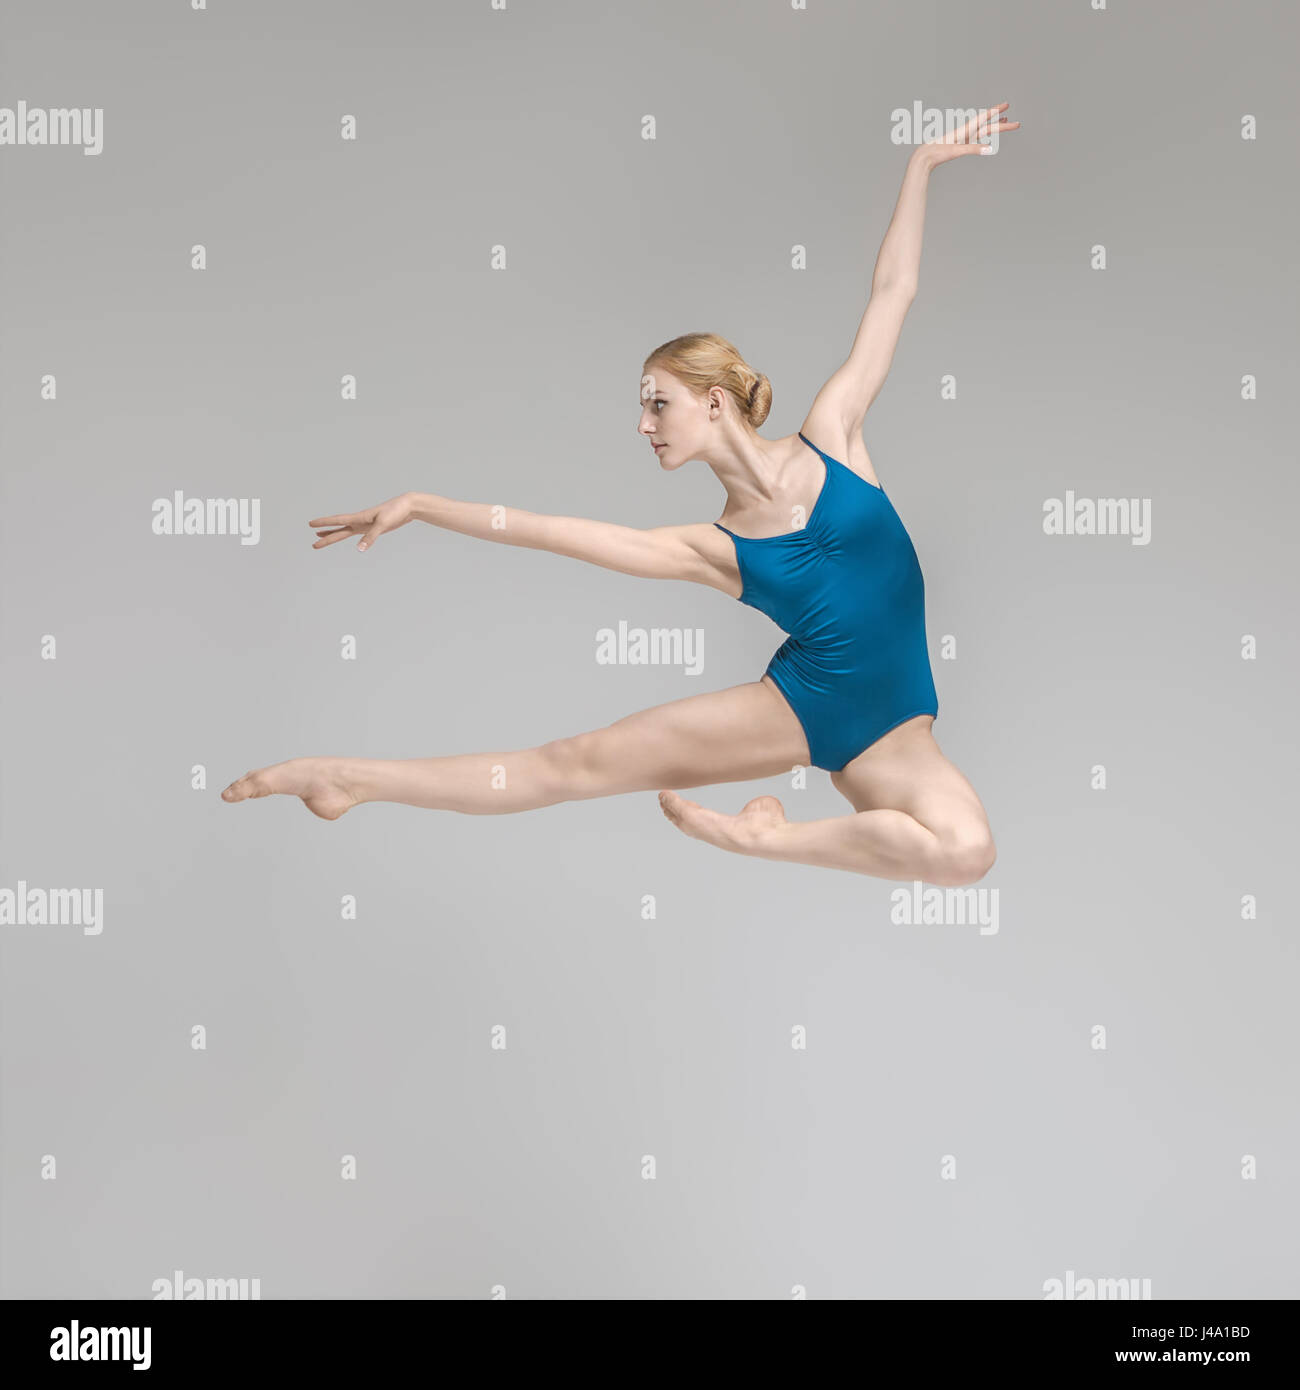 Salto della ballerina immagini e fotografie stock ad alta risoluzione -  Alamy